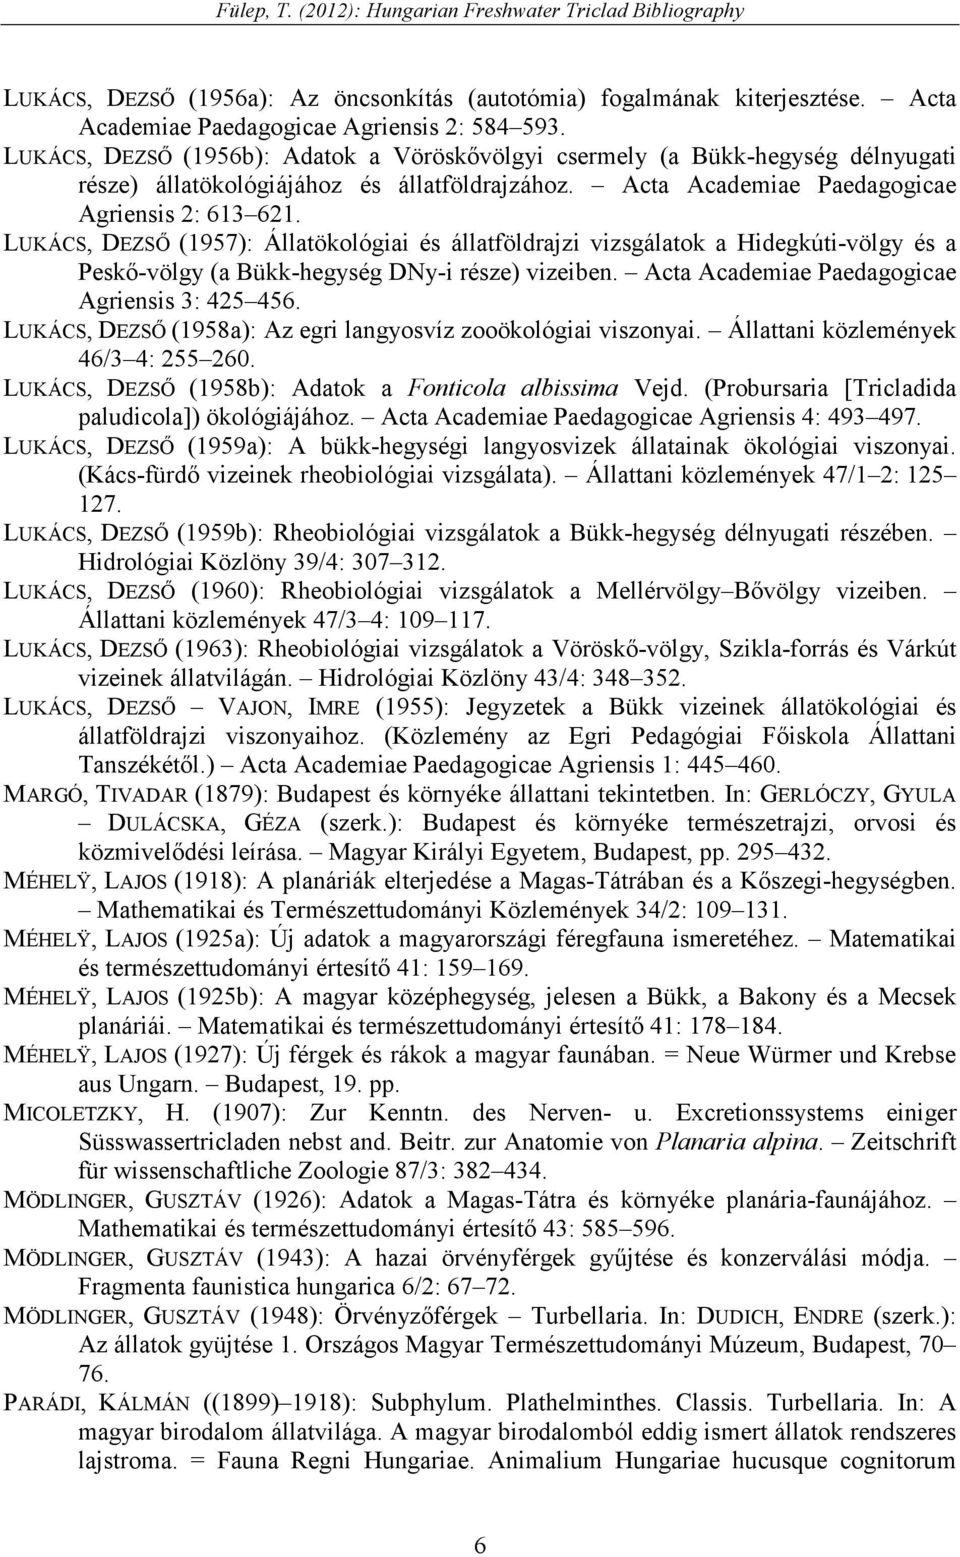 LUKÁCS, DEZSİ (1957): Állatökológiai és állatföldrajzi vizsgálatok a Hidegkúti-völgy és a Peskı-völgy (a Bükk-hegység DNy-i része) vizeiben. Acta Academiae Paedagogicae Agriensis 3: 425 456.